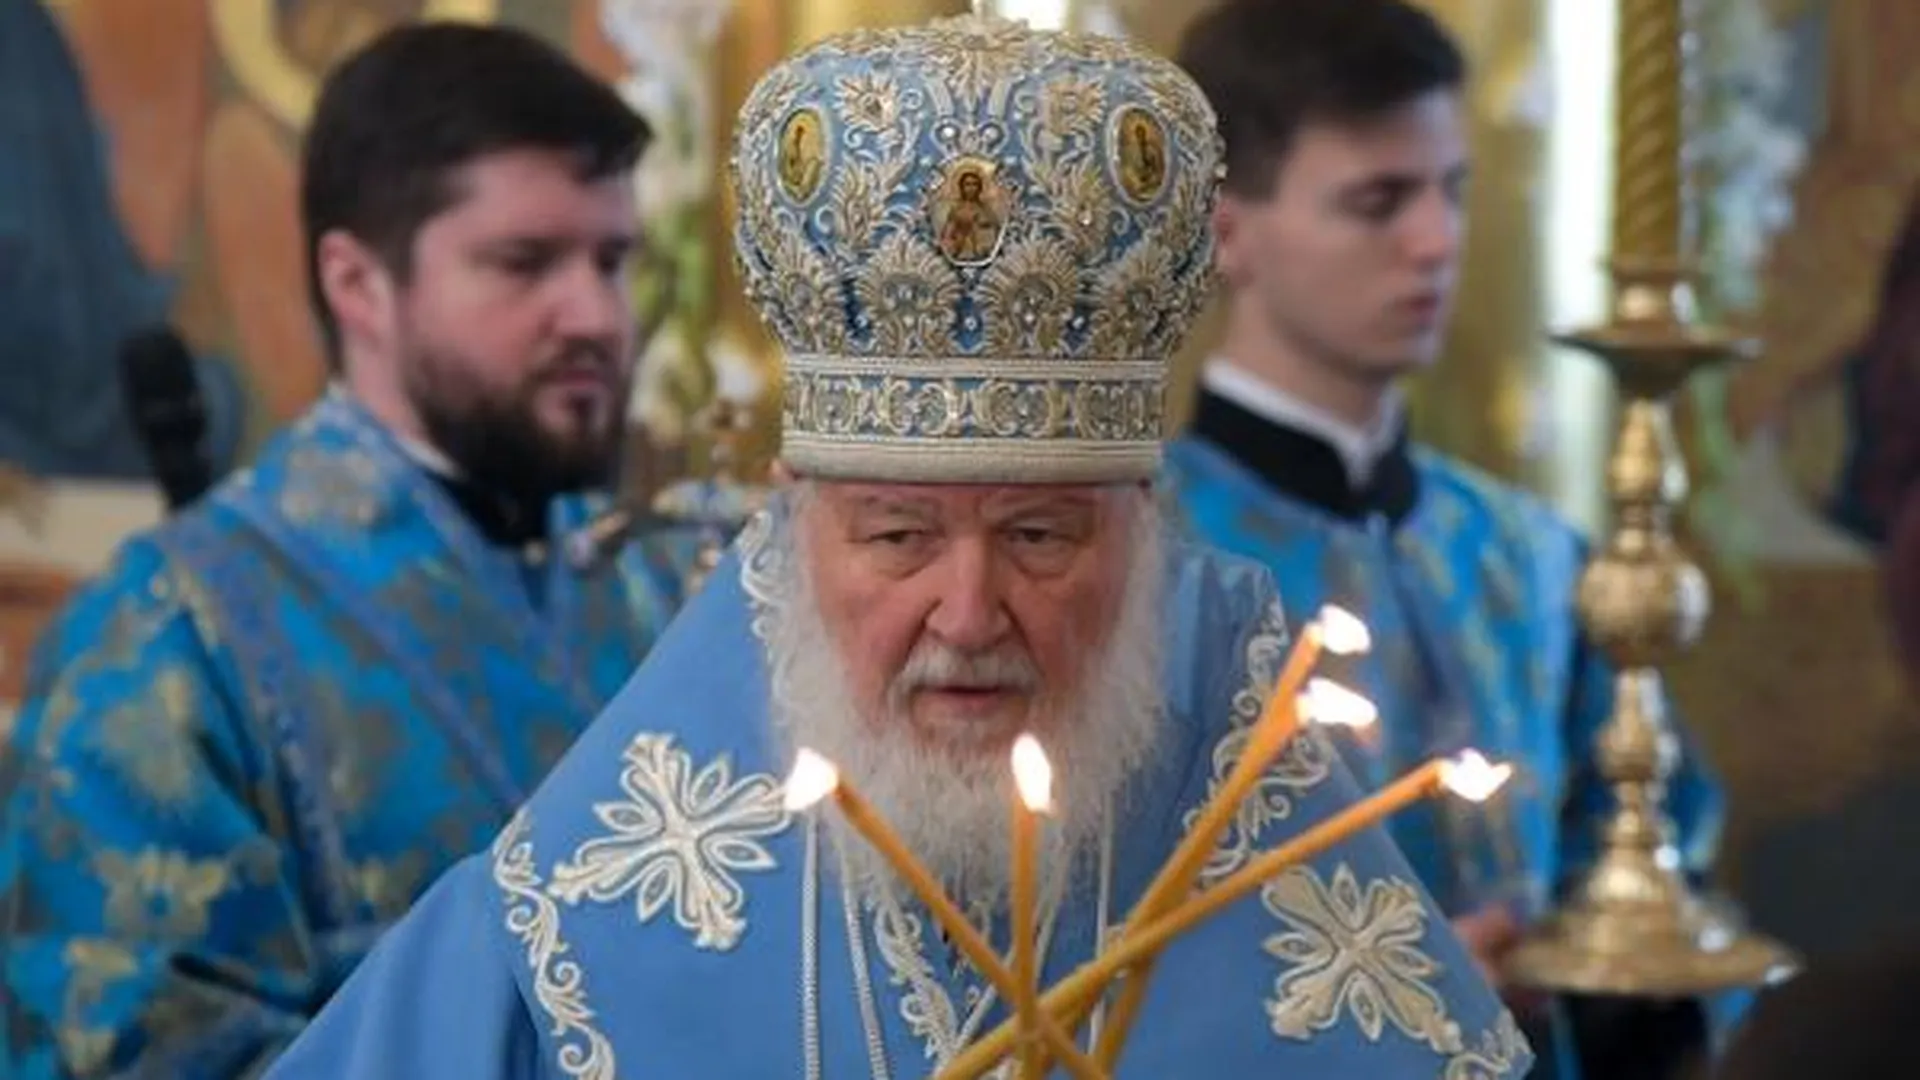 Патриарх Московский и всея Руси Кирилл совершает Божественную литургию в честь праздника Покрова Пресвятой Богородицы